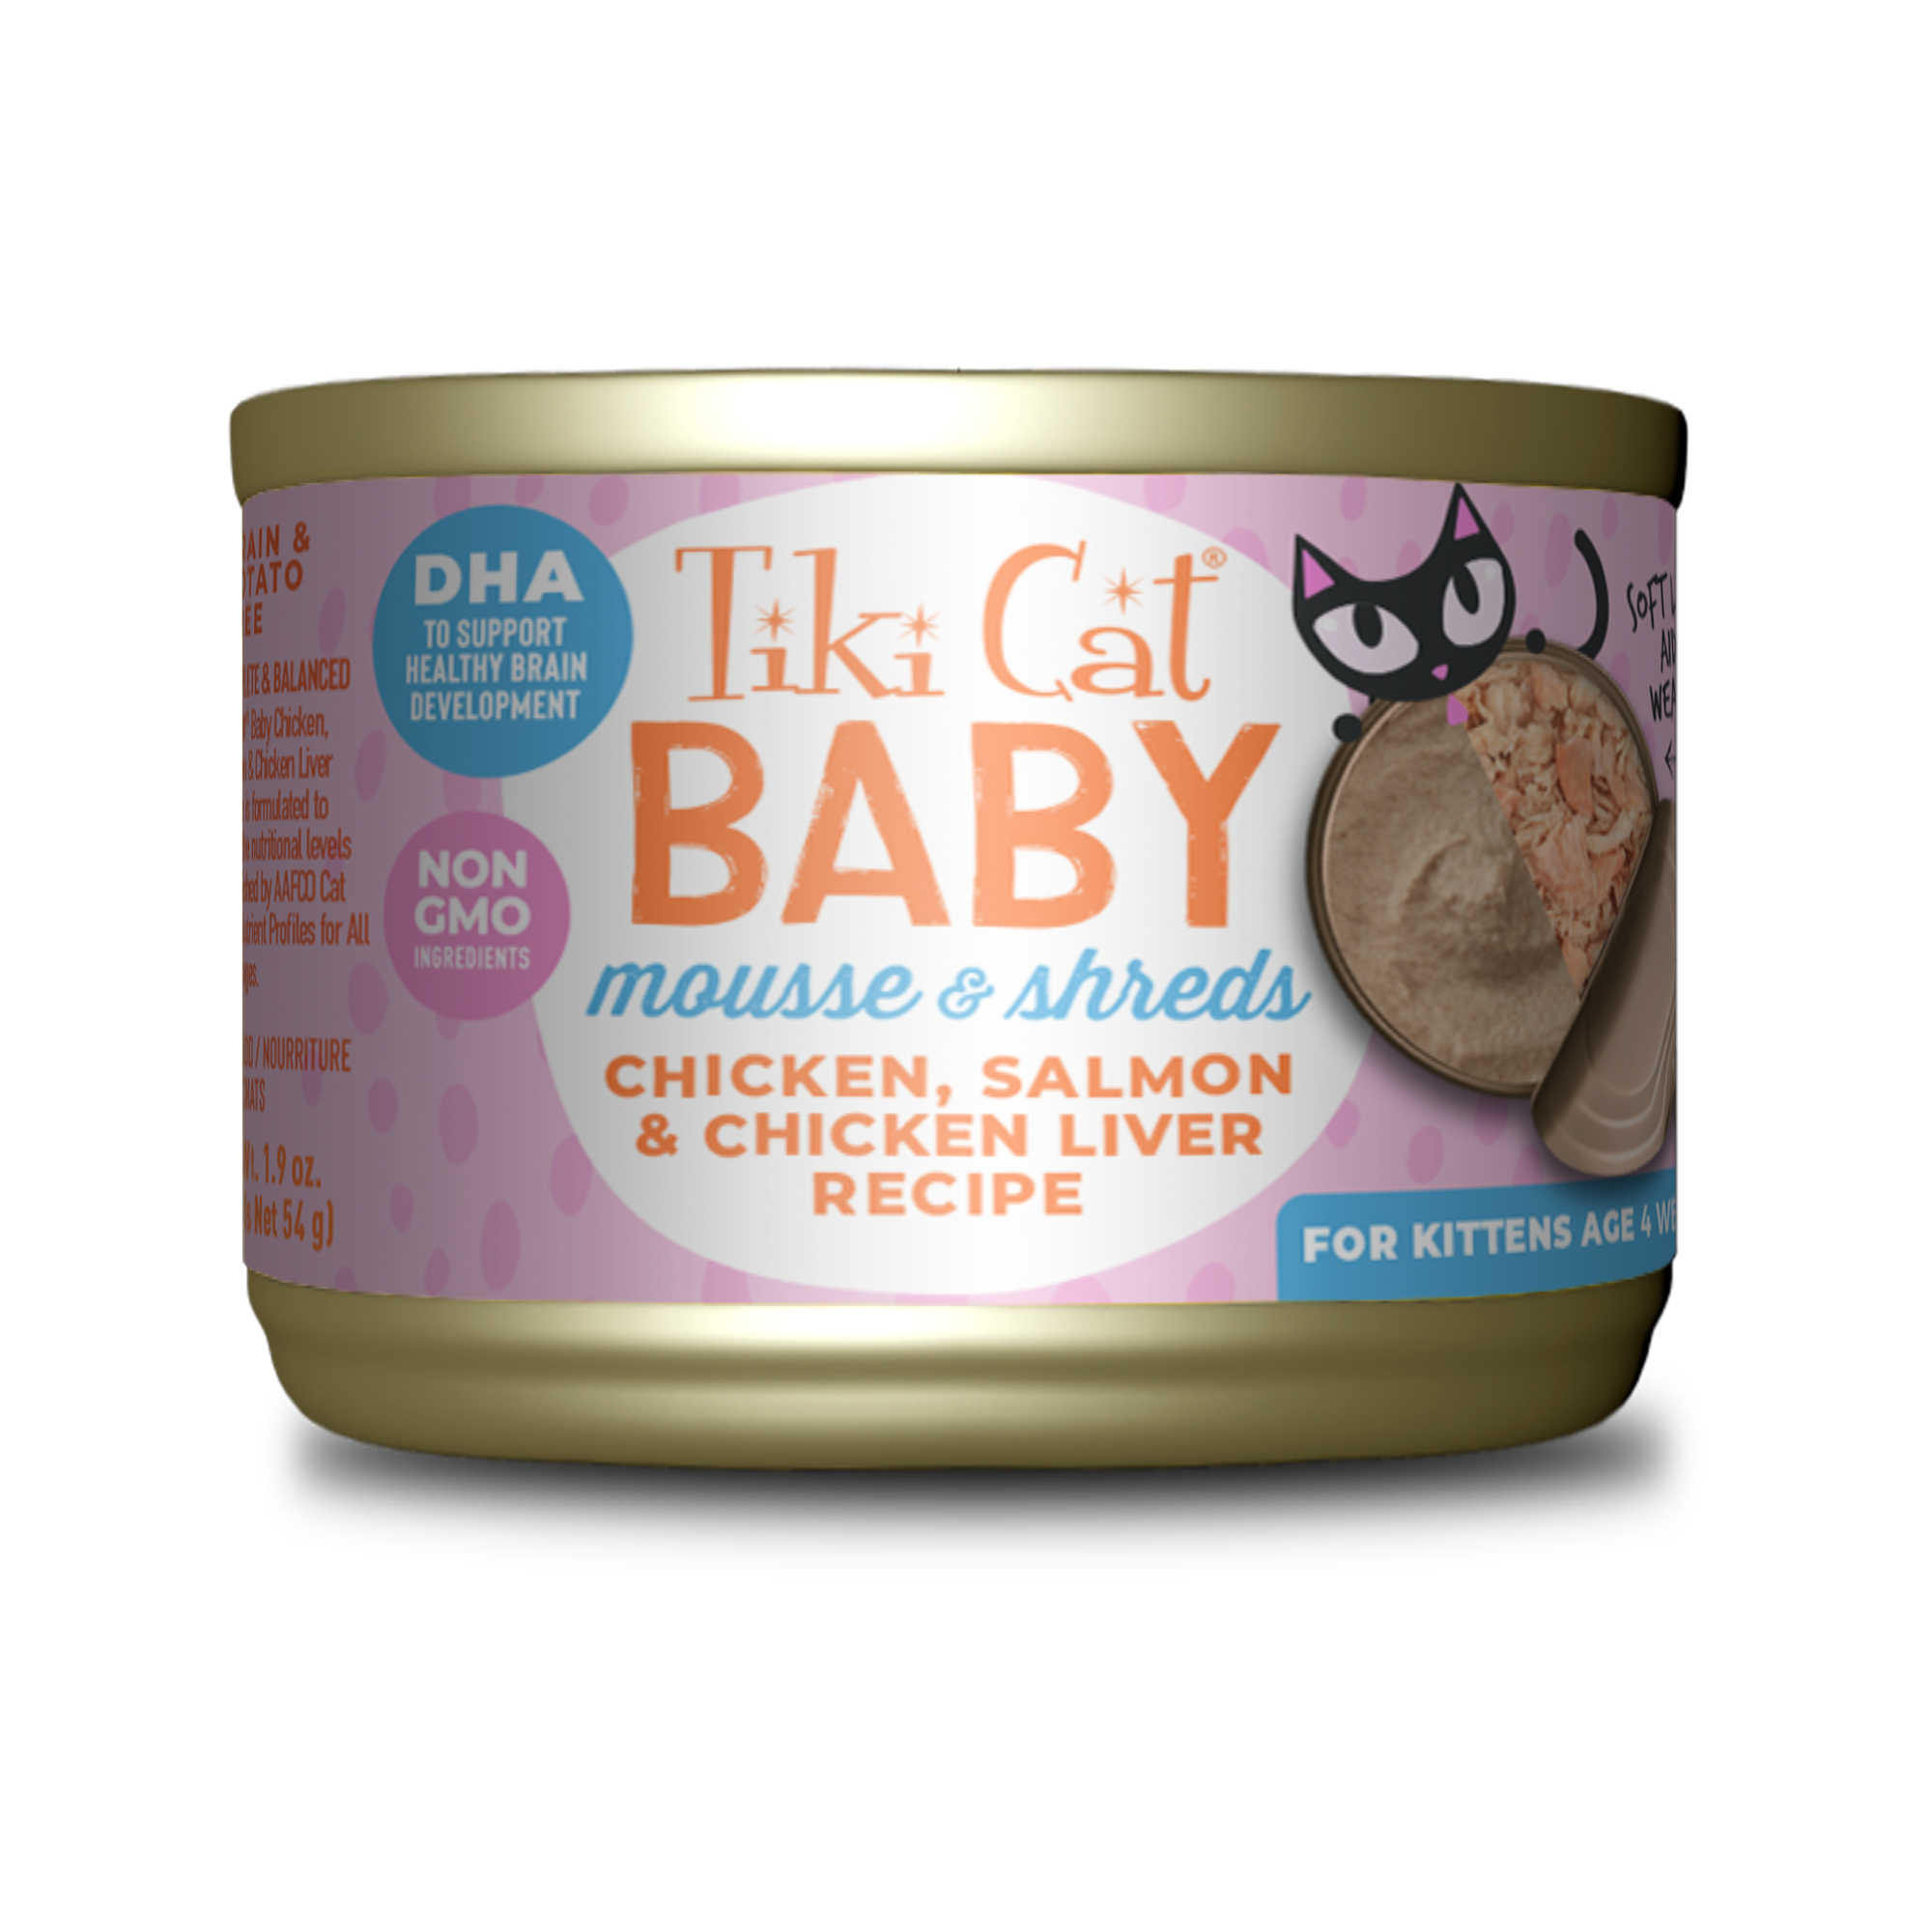 Tiki Cat Baby Recipes-Four Muddy Paws